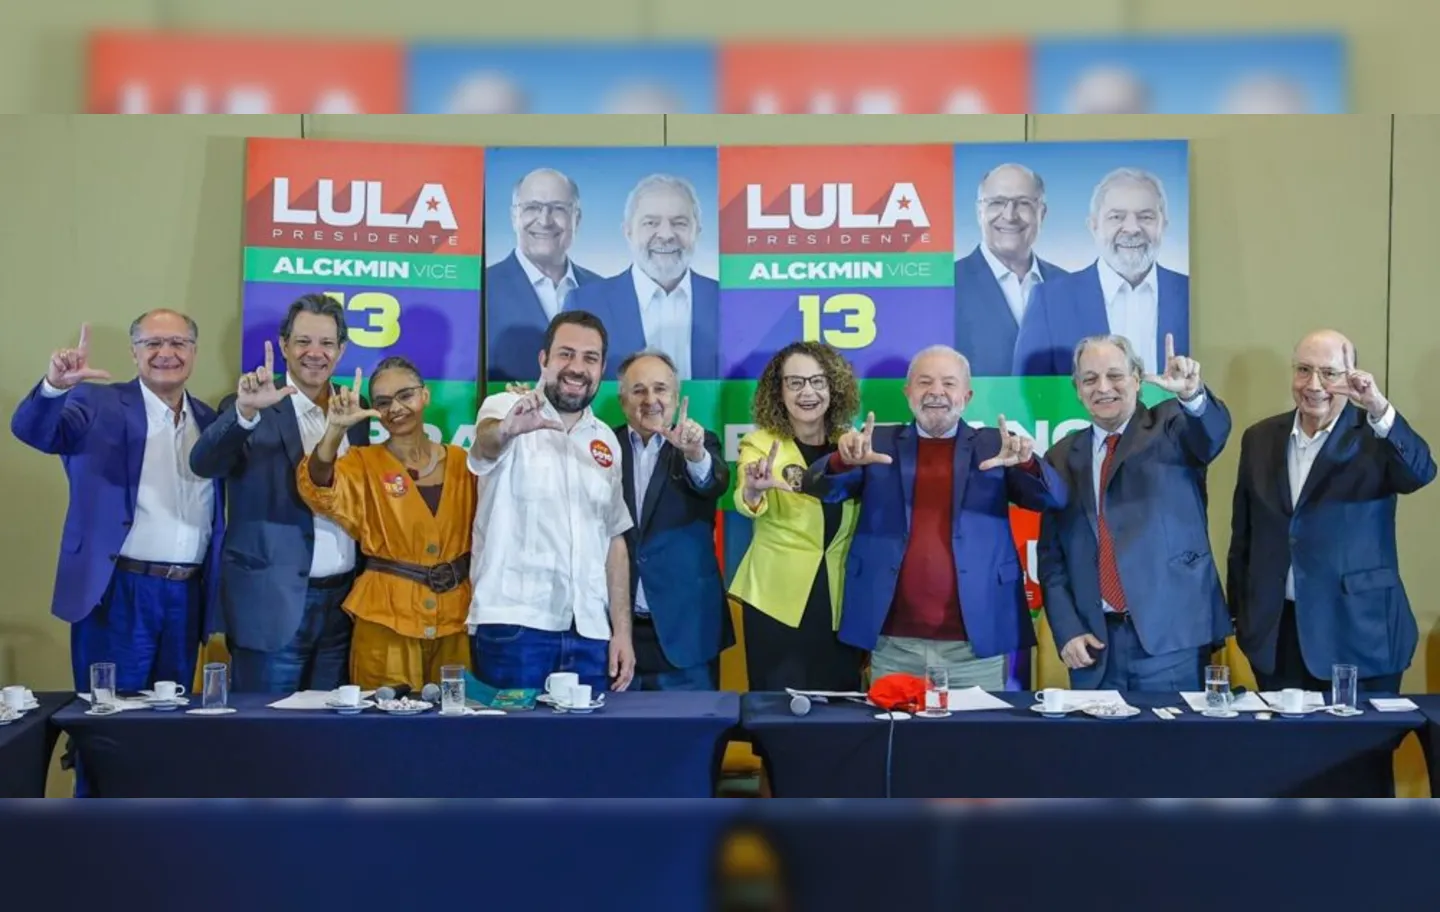 Lula concorre em sua sexta eleição. Em 2002 e 2006, foi vencedor, enquanto em 1989, 1994 e 1998, terminou na segunda colocação